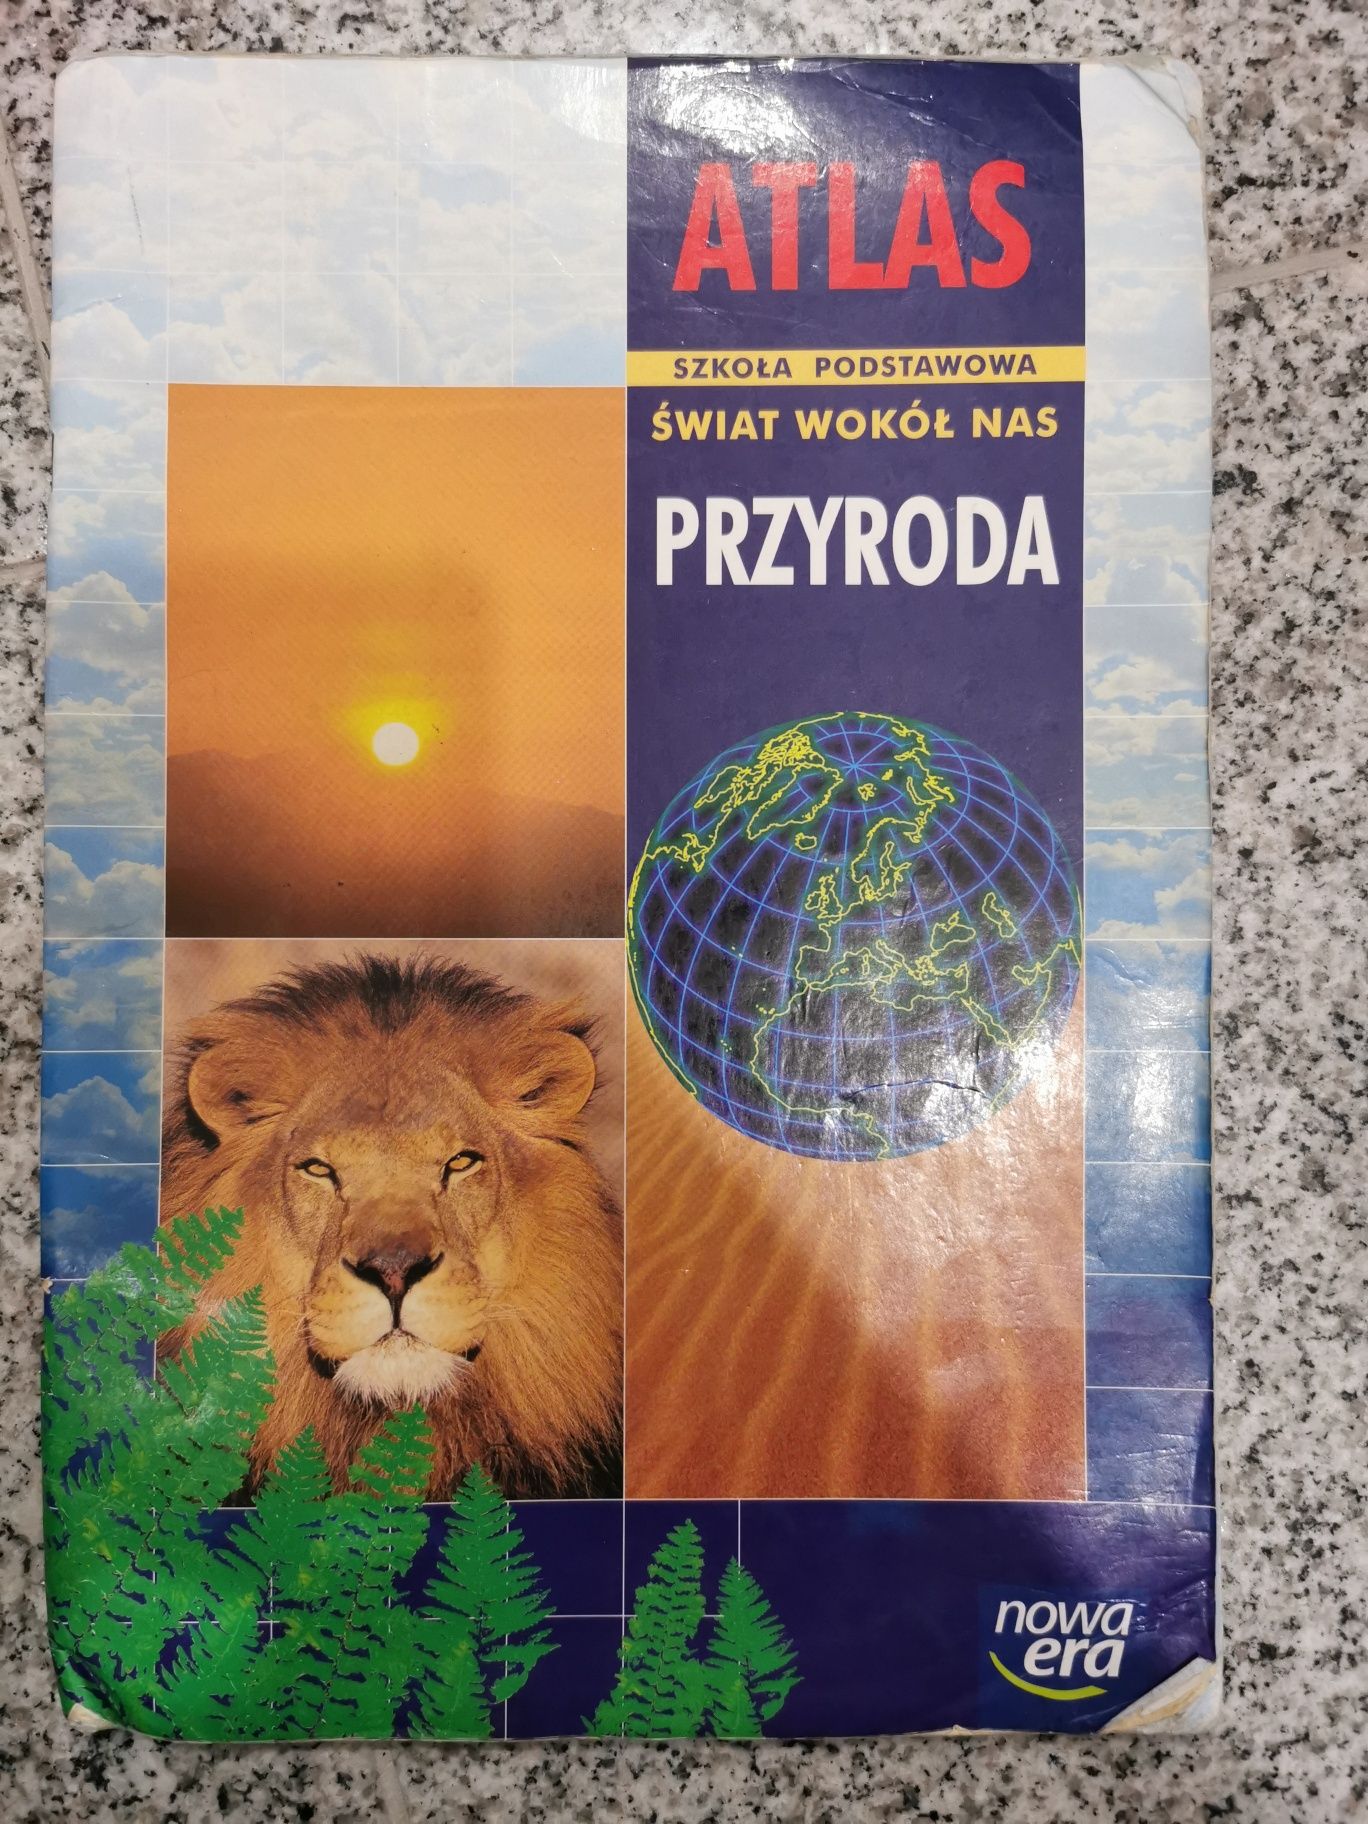 Atlas świat wokół nas przyroda nowa era